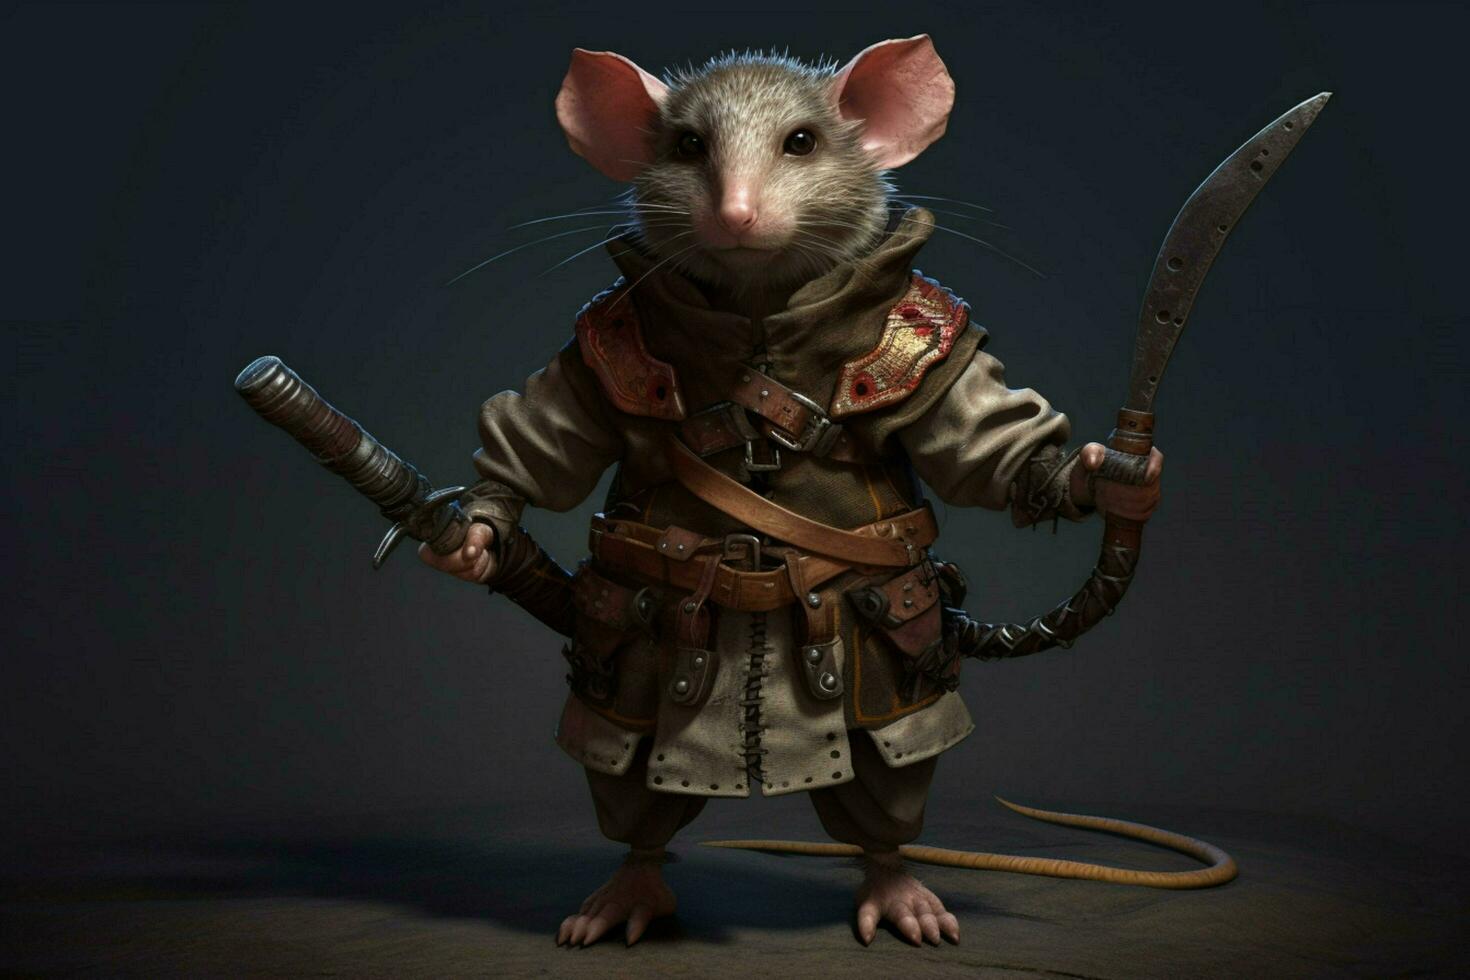 en karaktär från de spel råtta foto